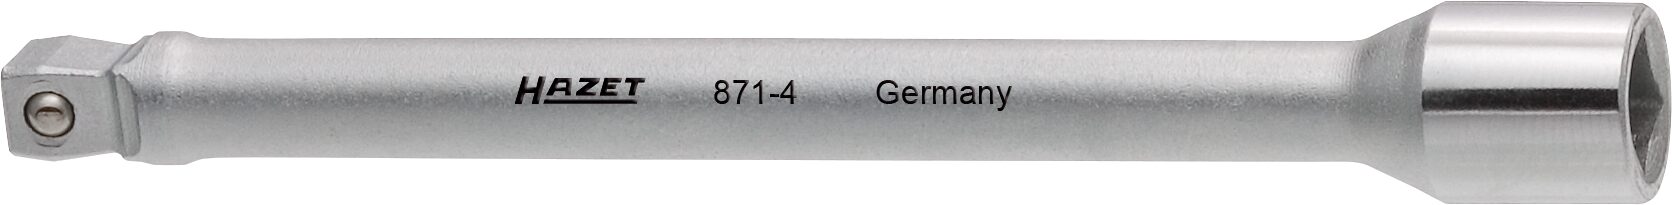 HAZET Verlängerung · schwenkbar 871-4 · Vierkant hohl 6,3 mm (1/4 Zoll) · Vierkant massiv 6,3 mm (1/4 Zoll)